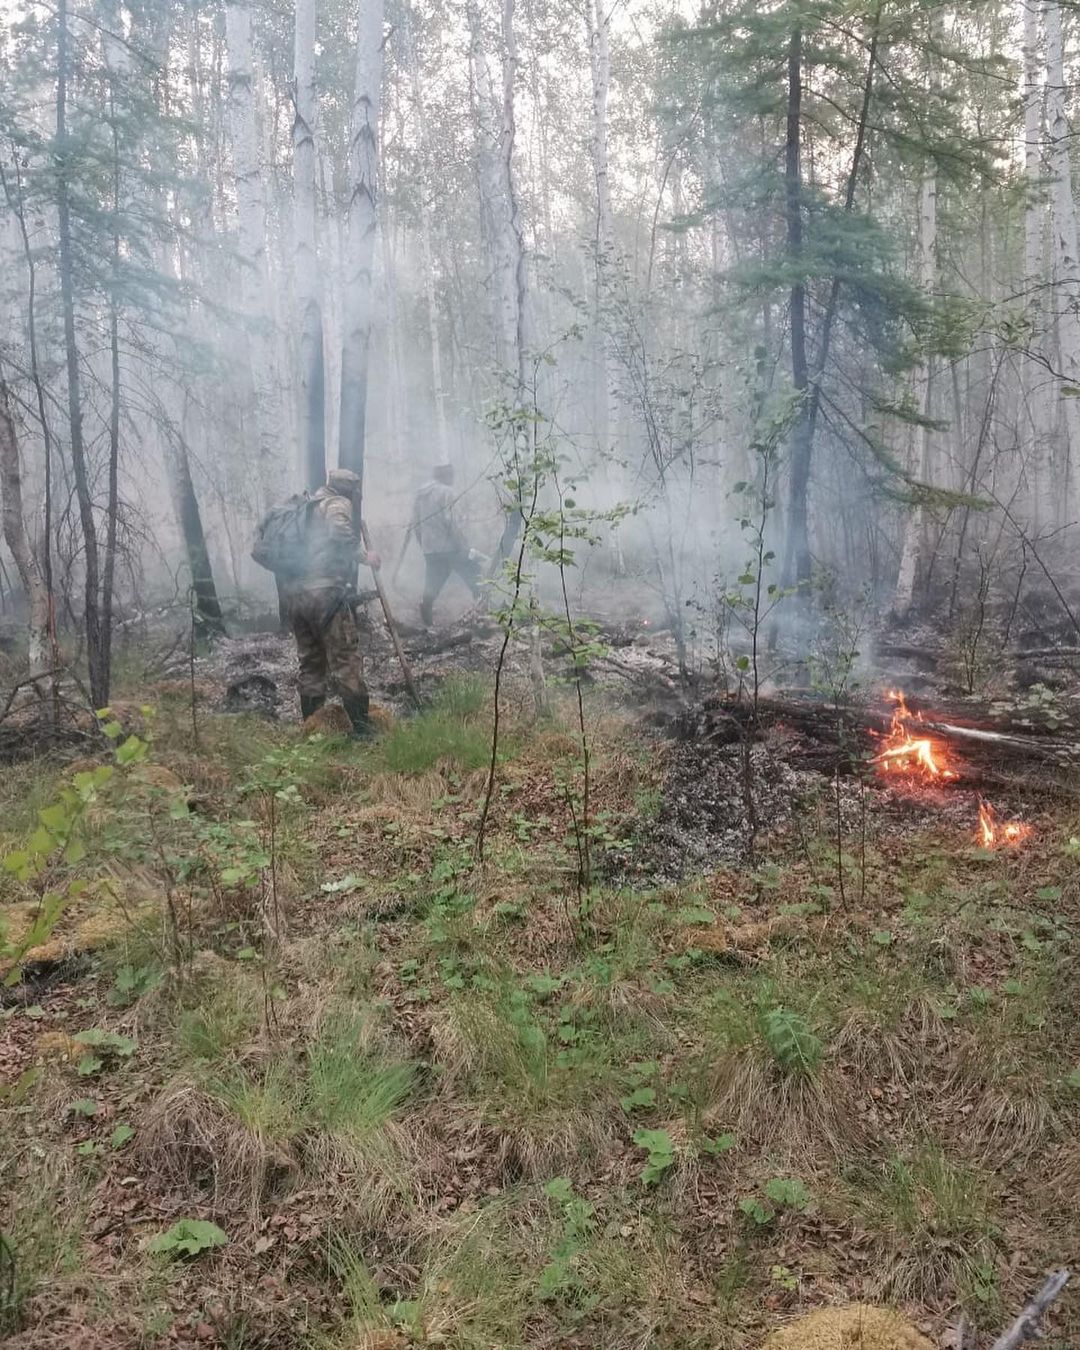 Авиалесоохрана: Основная причина пожаров в Якутии – грозы. Человеческий фактор не доминирует